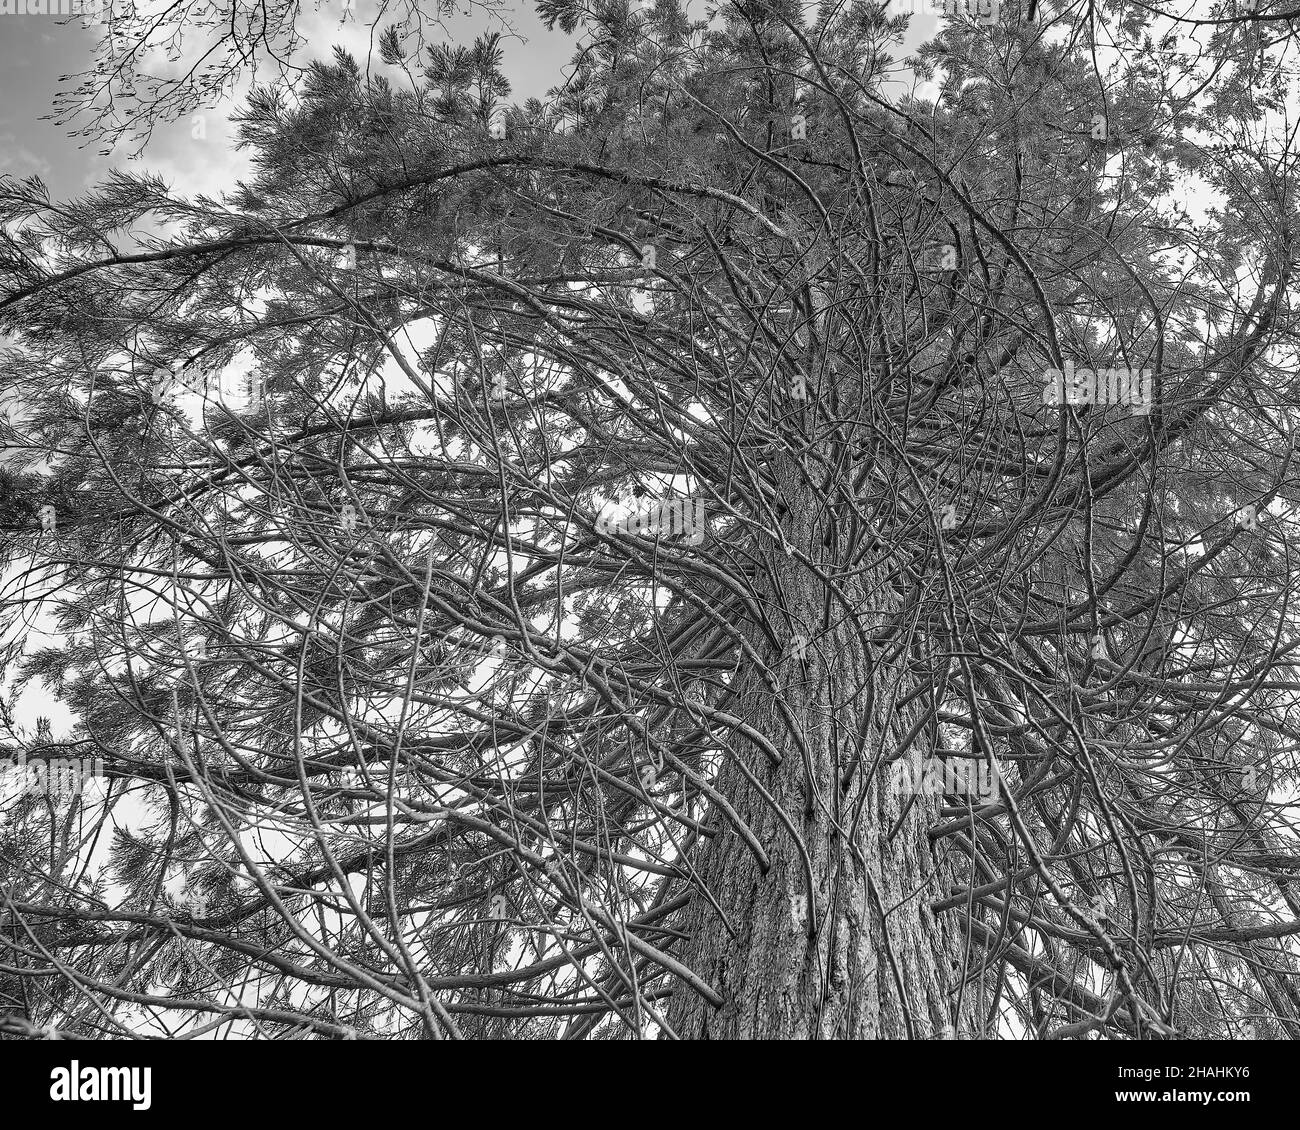 Die Peitschenpfosten - schwarz-weißes Bild von Baum mit spiralförmigen Ästen im Wind. Warwickshire, Großbritannien. Stockfoto